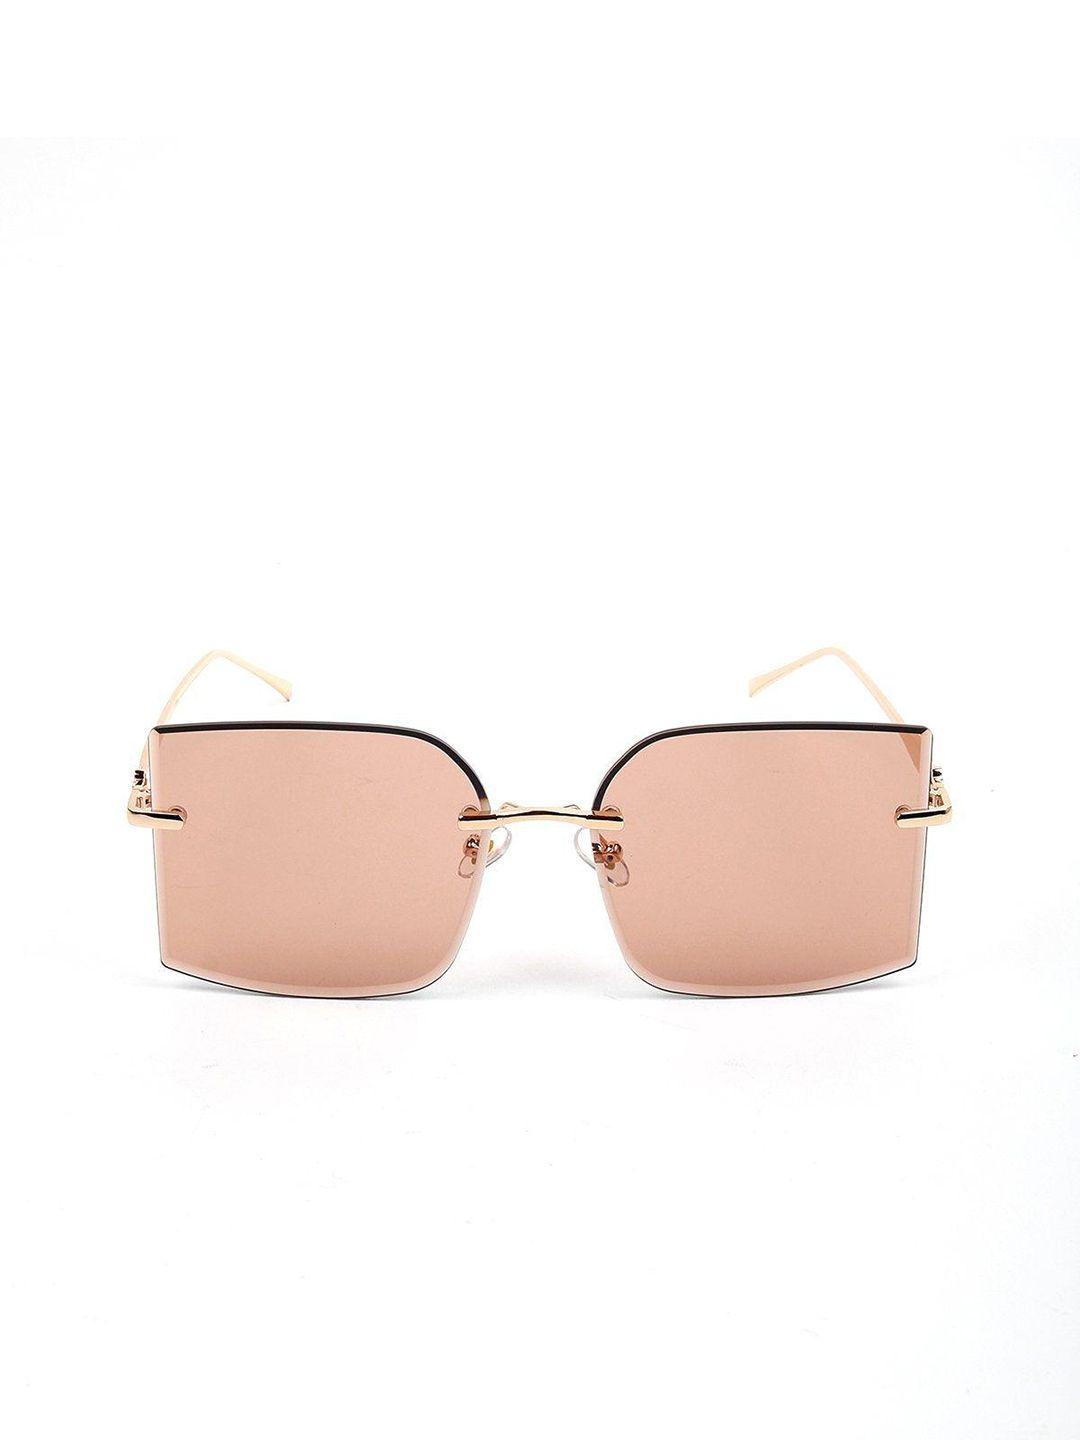 odette women lens & oversized sunglasses with uv protected lens